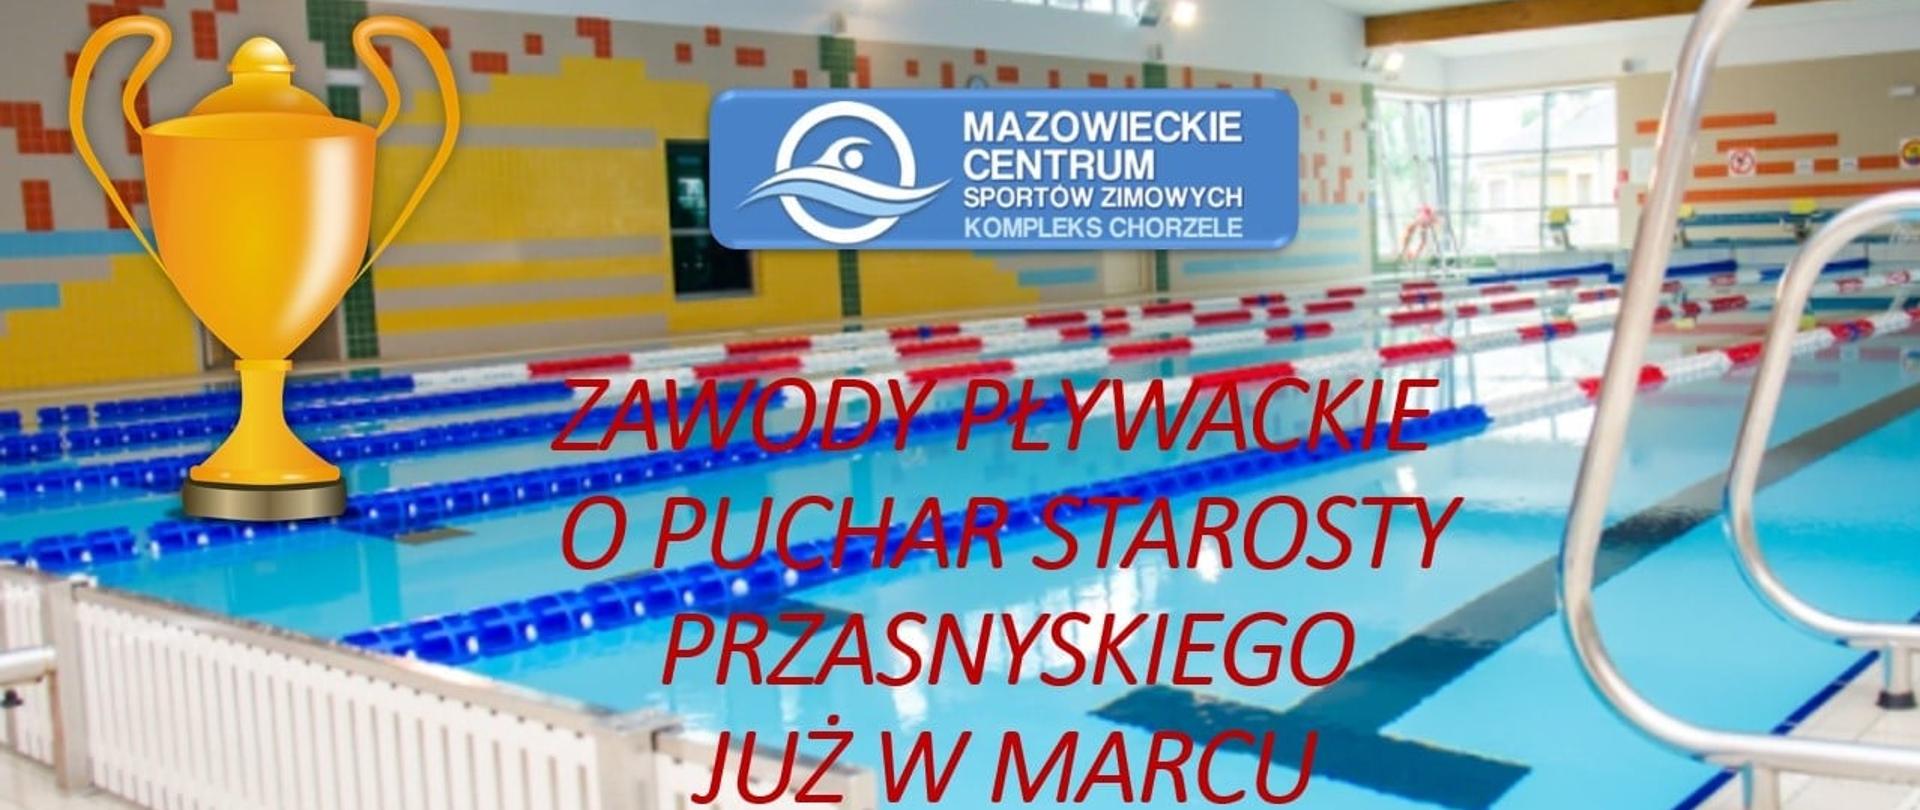 Grafika promująca zbliżające się w marcu wydarzenie sportowe - zawody pływackie o puchar starosty przasnykiego